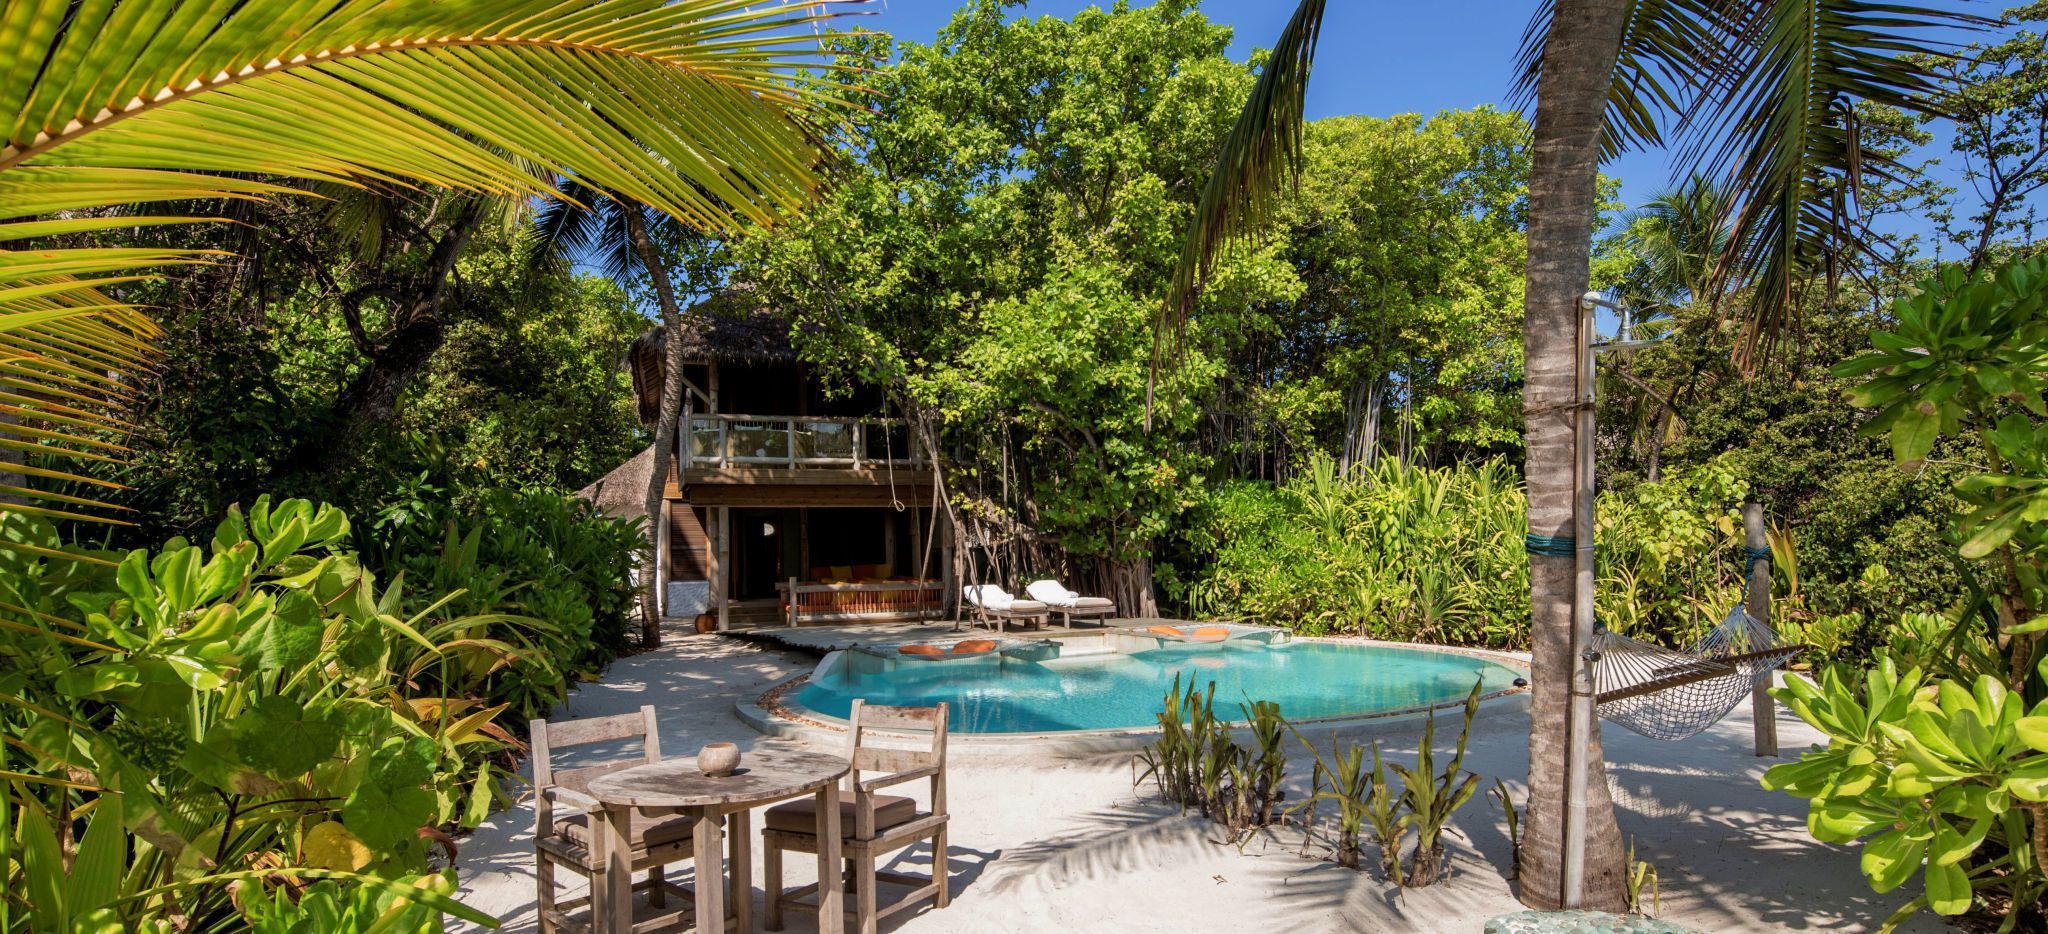 Eine Villa mit privatem Pool, von tropischer Natur umgeben